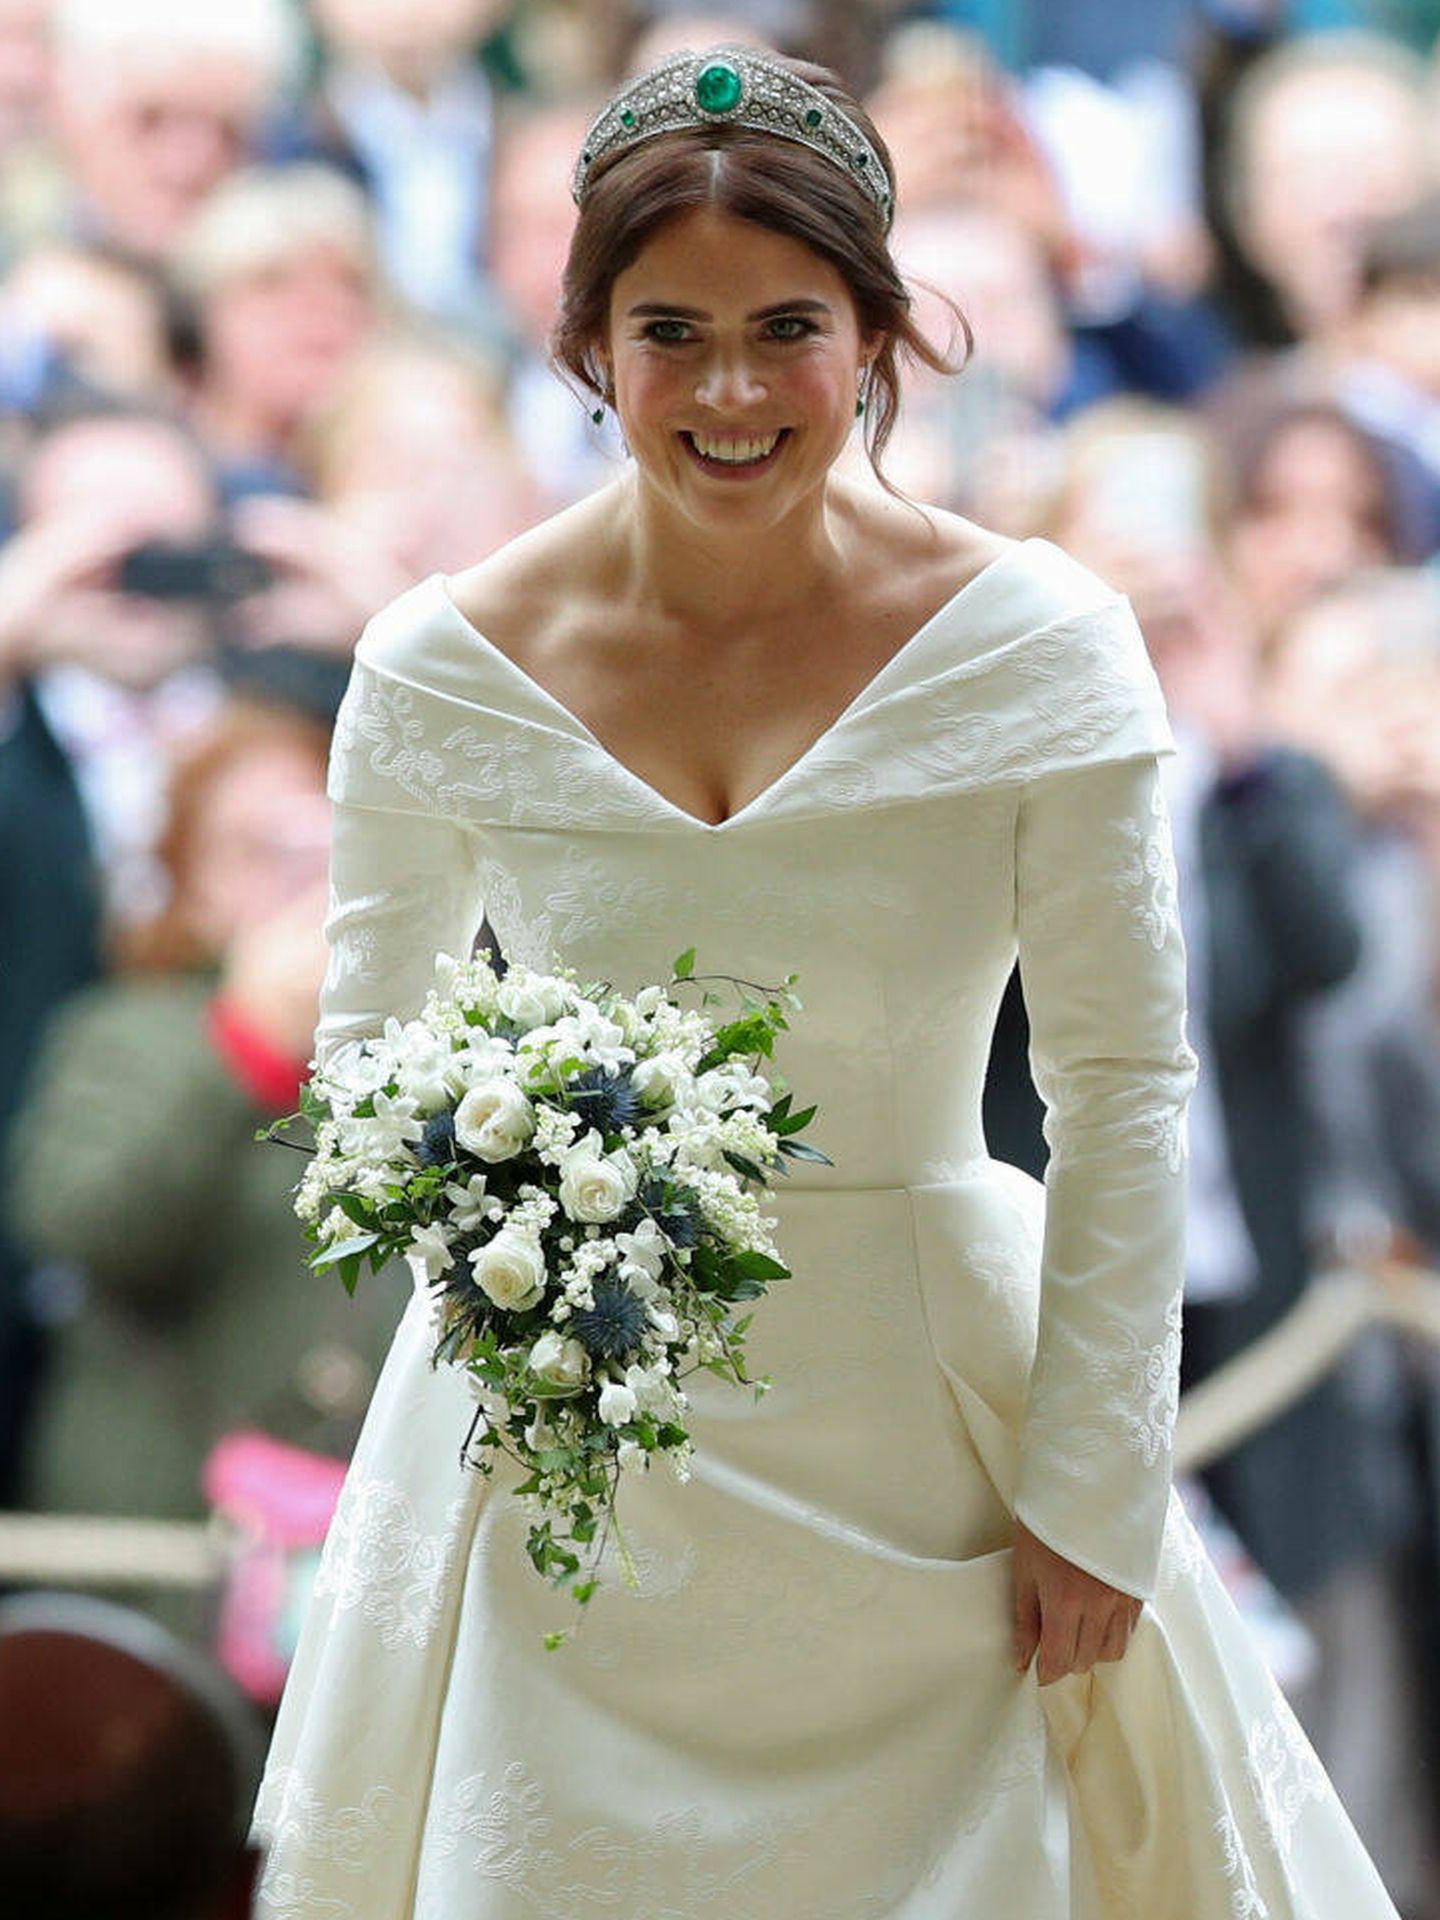 Detalle del vestido de novia escogido por Eugenia de York. (Getty Images)